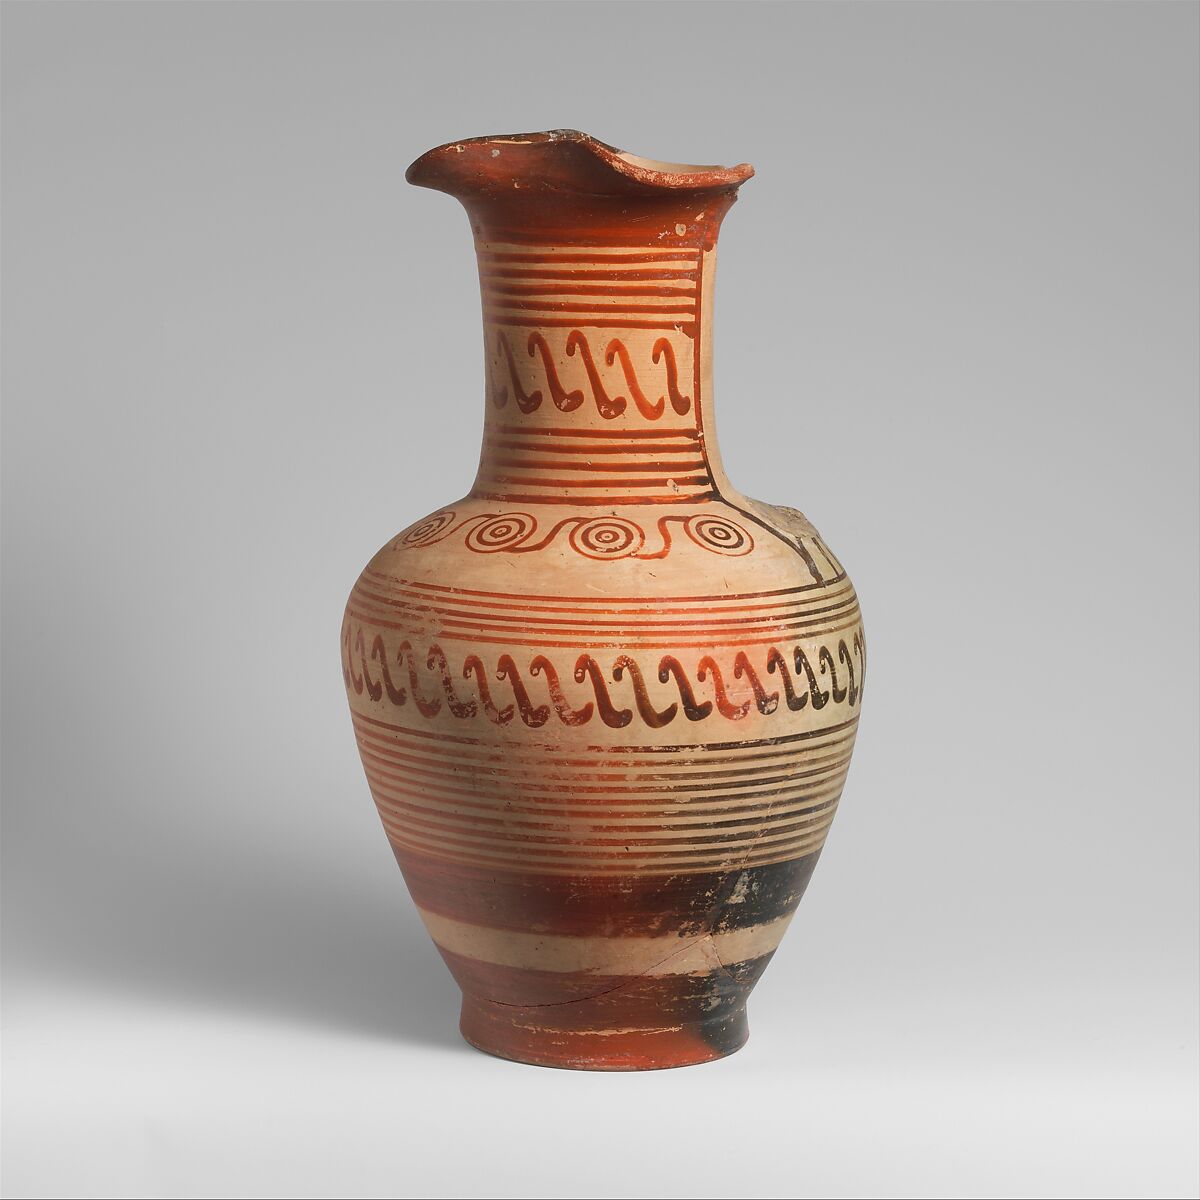 Terracotta oinochoe (jug), Terracotta, Greek, Cumaean 